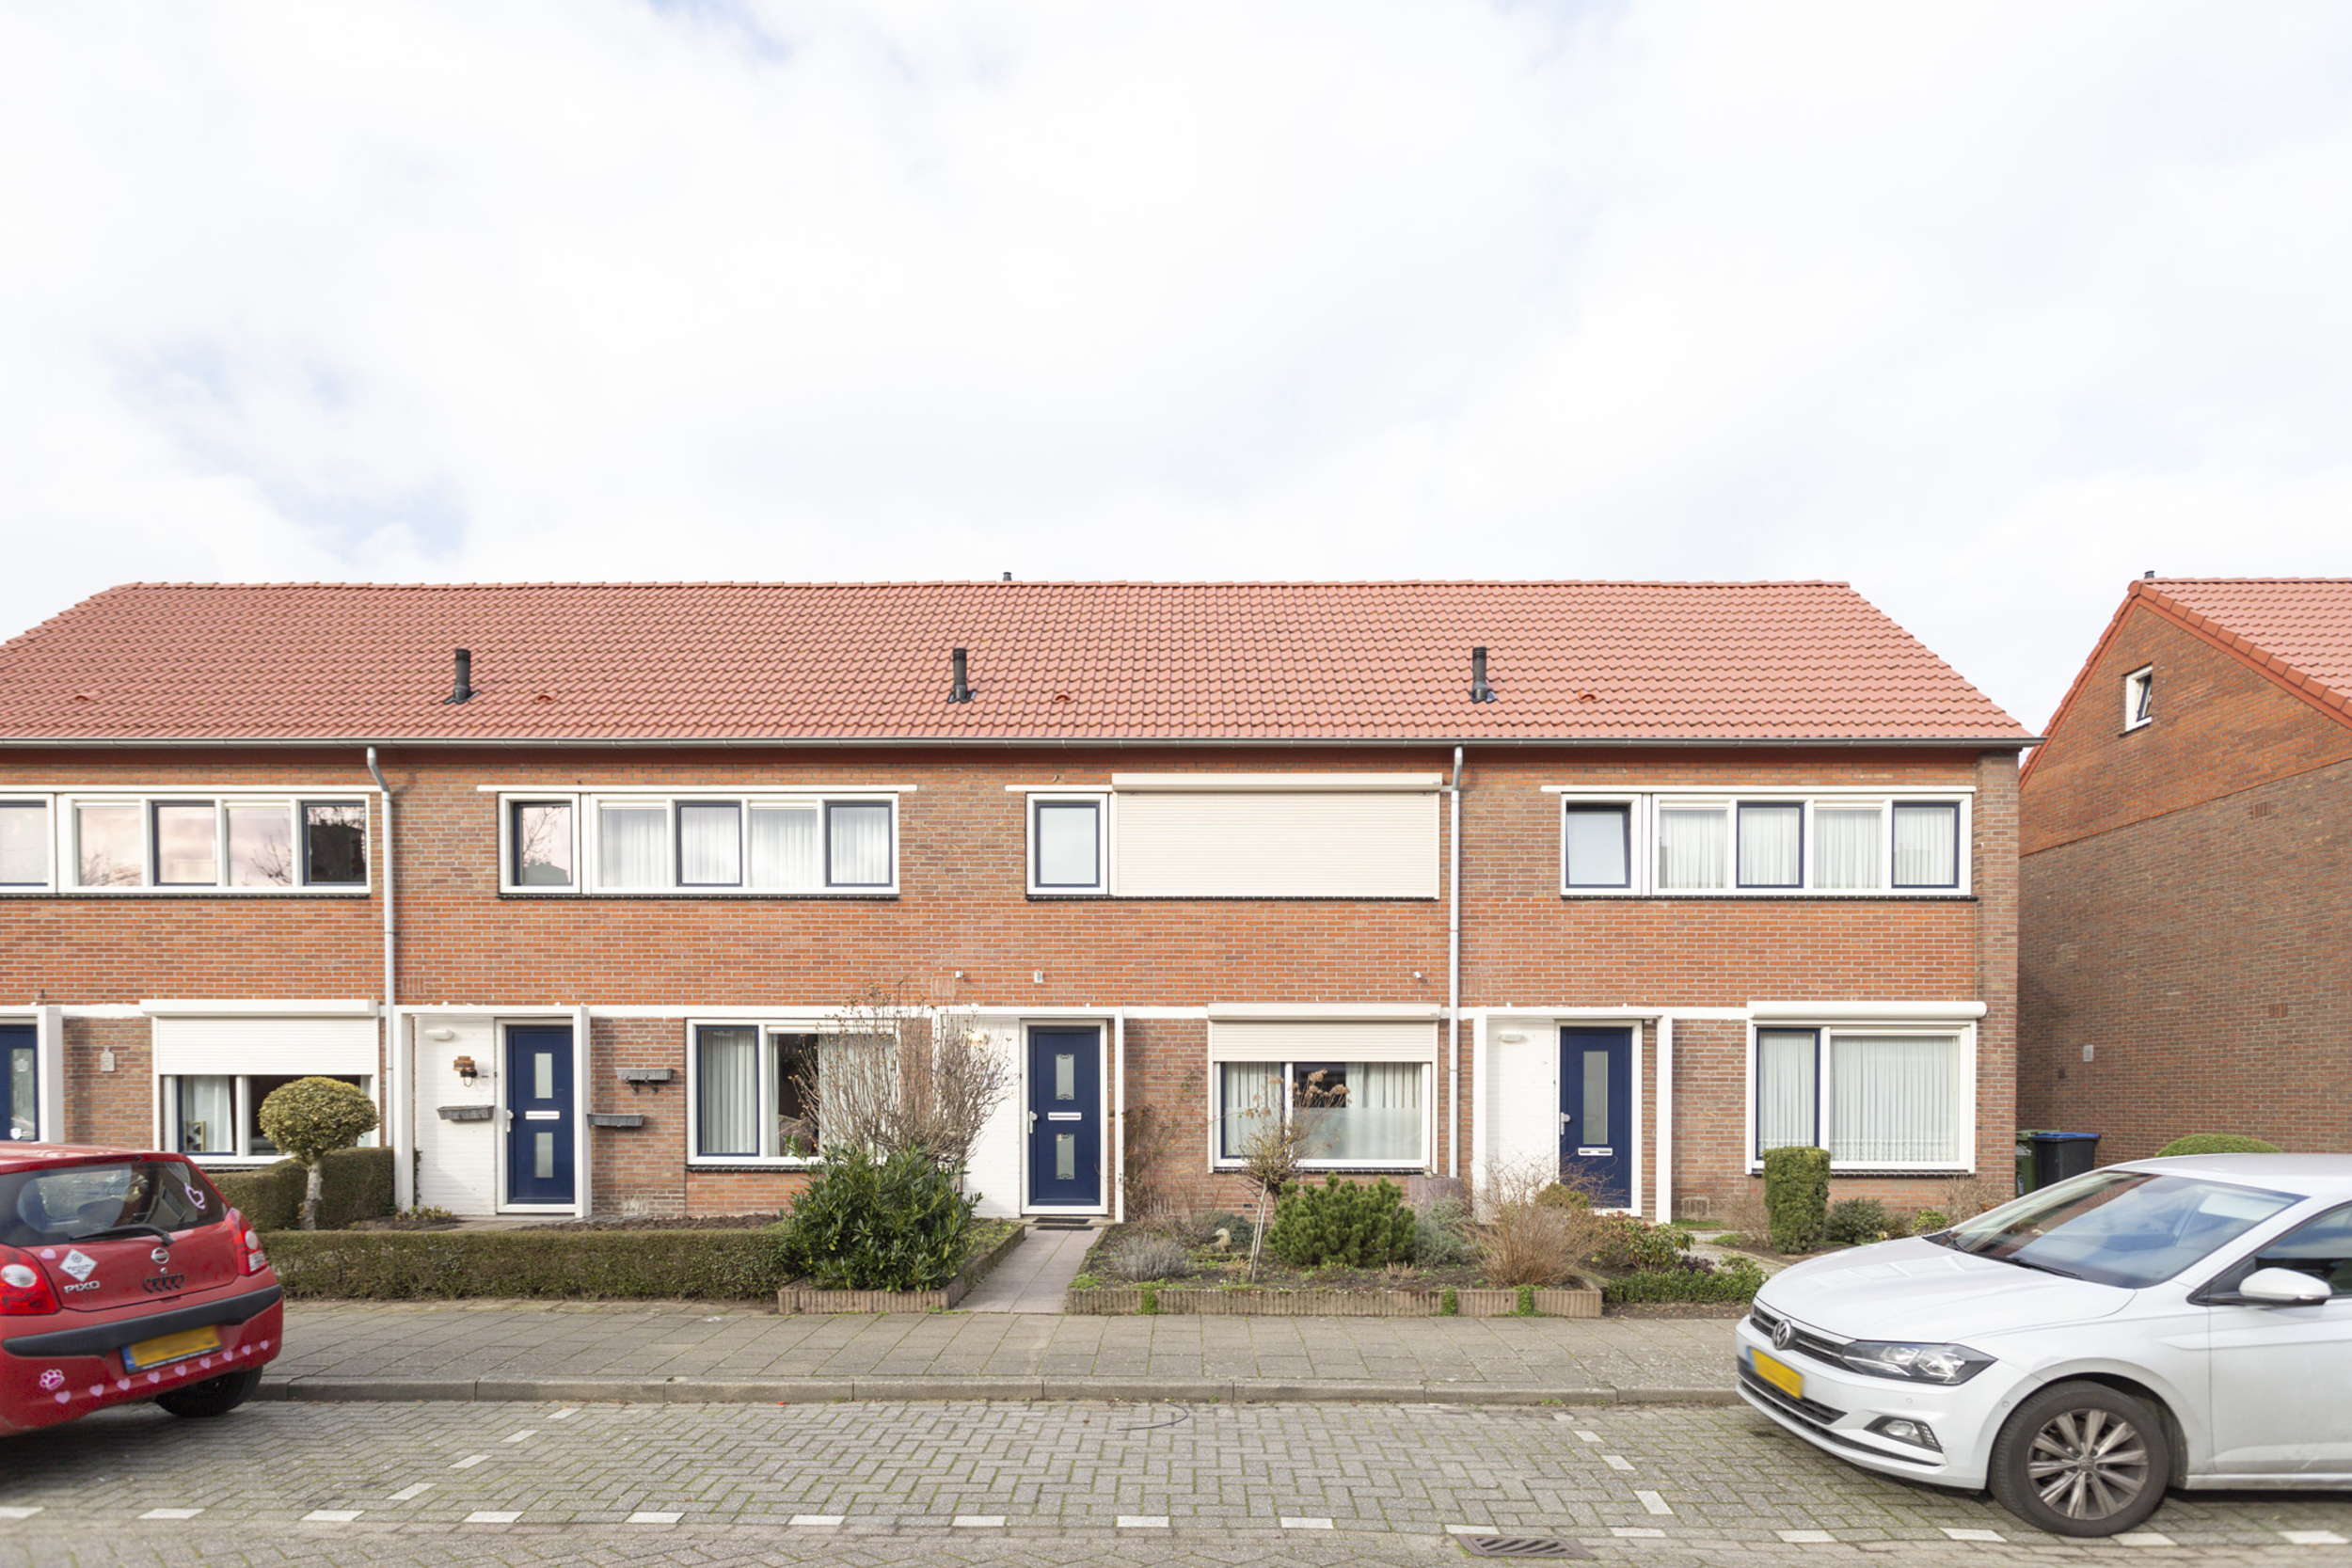 Margrietstraat 20, 4751 BD Oud Gastel, Nederland